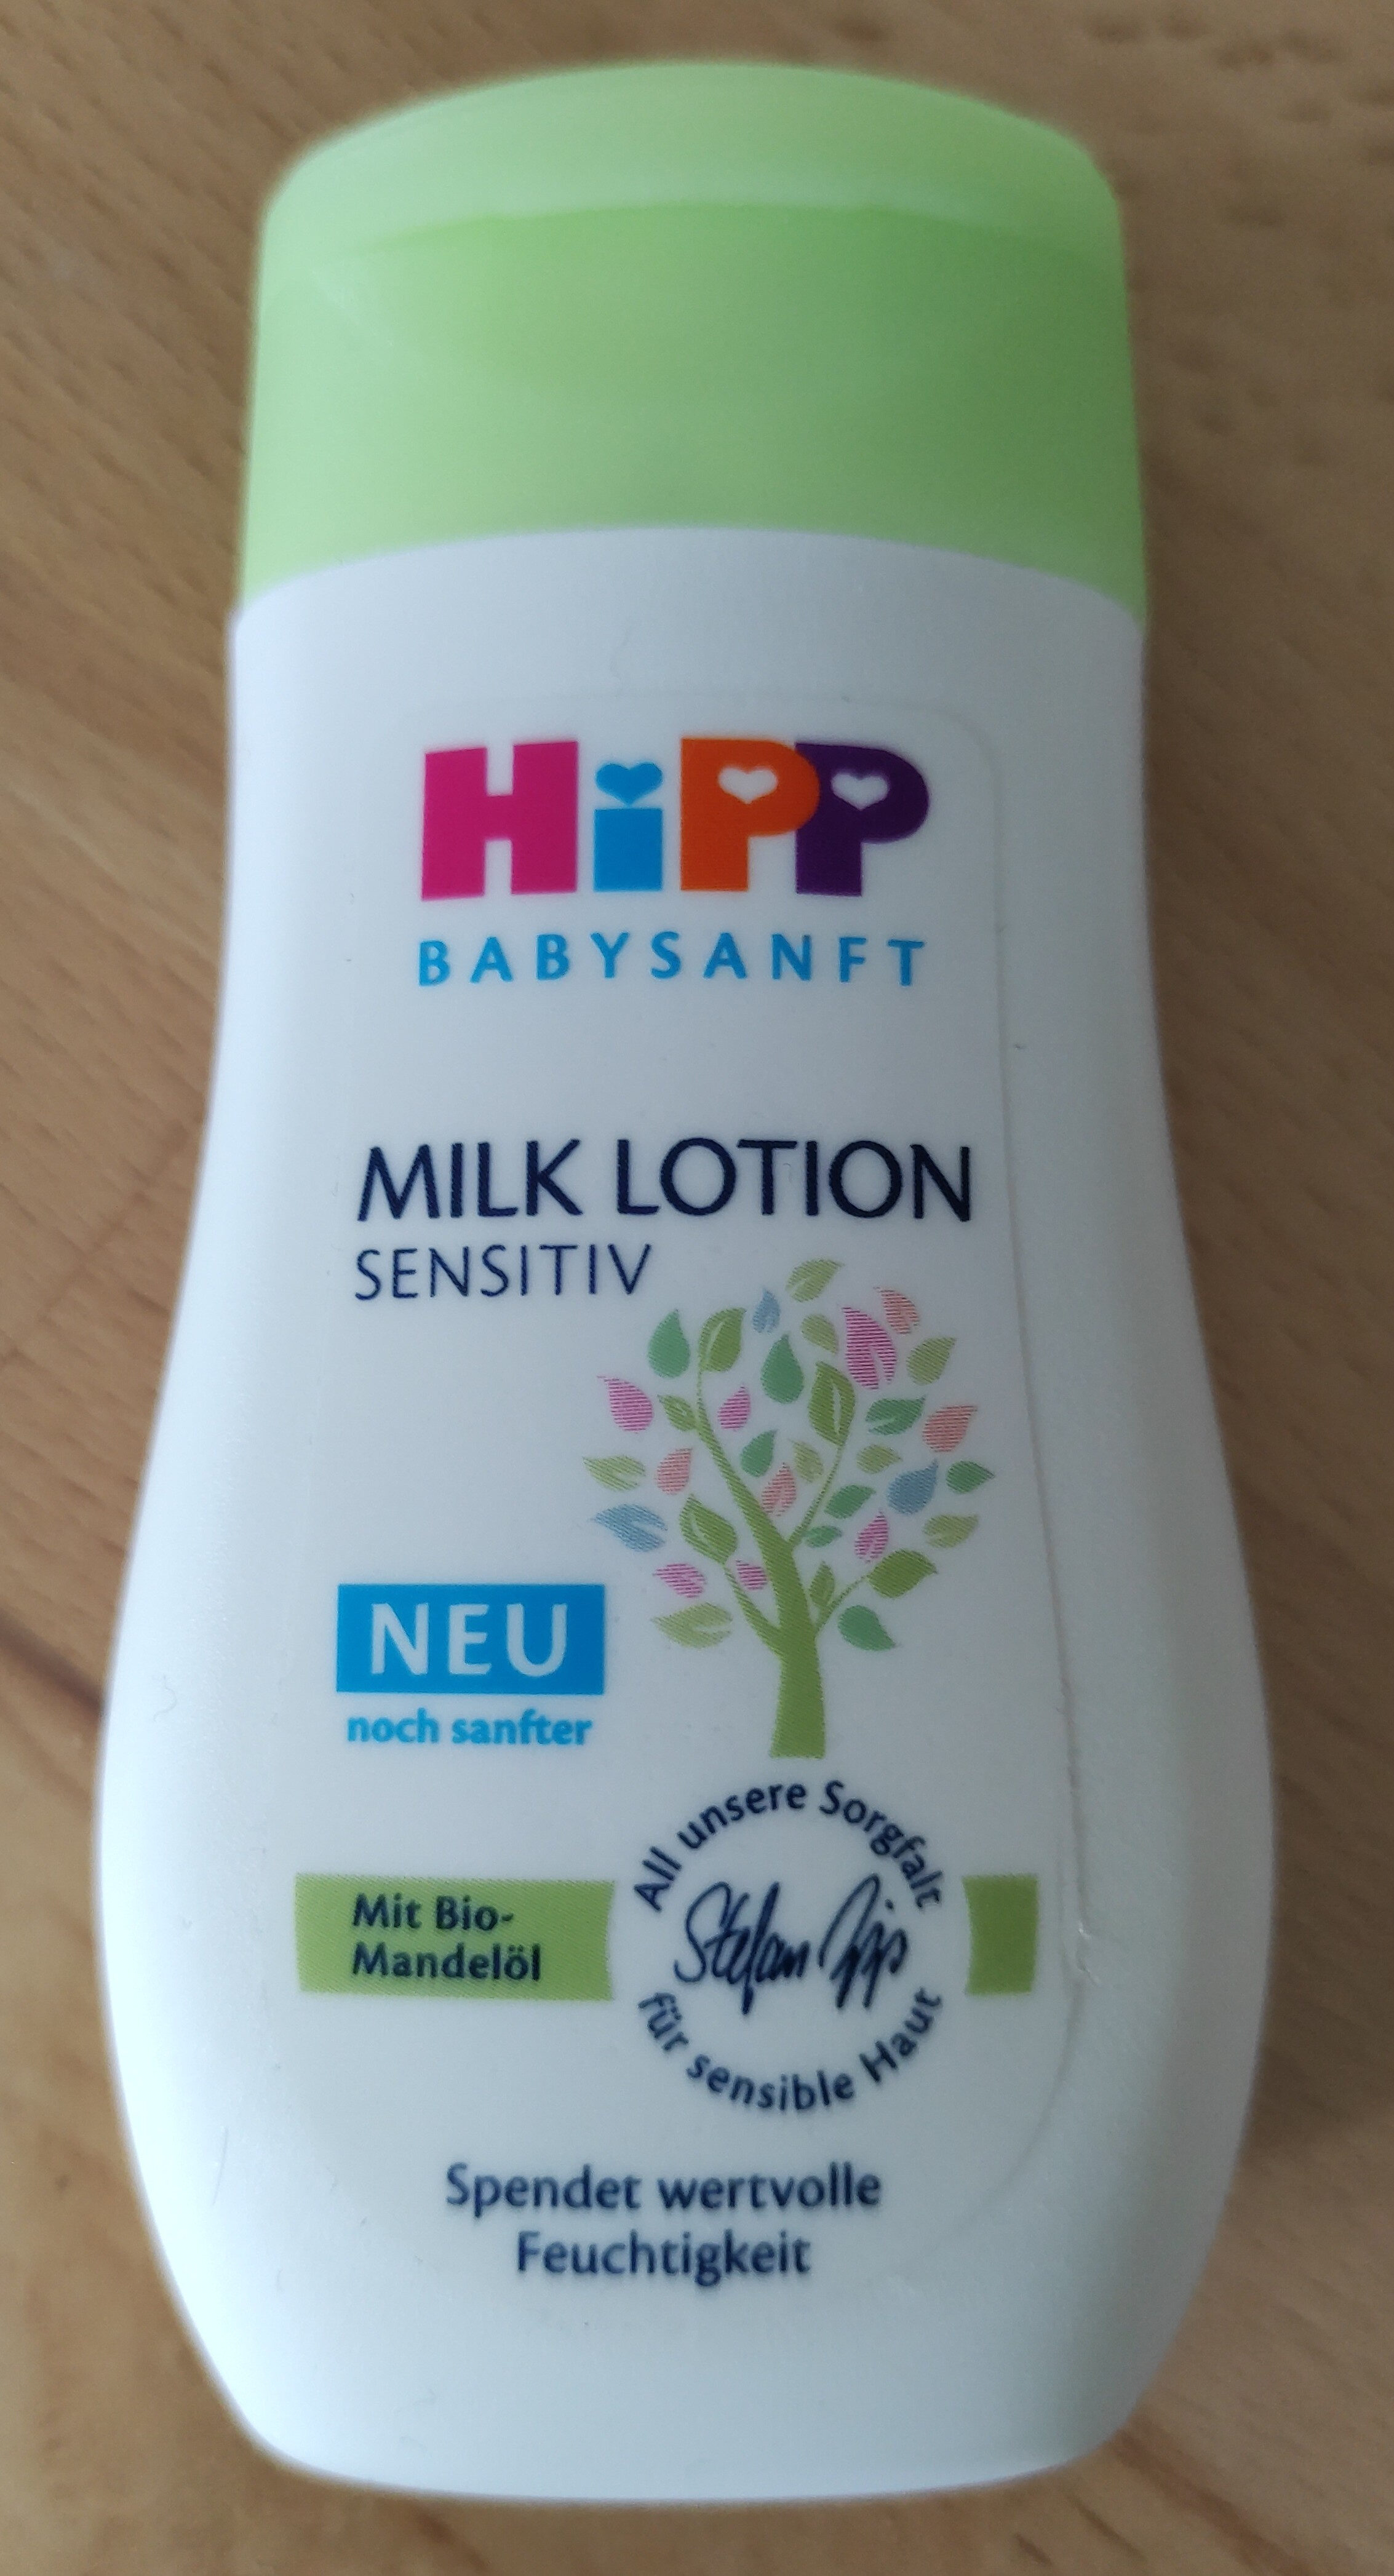 Milk Lotion Sensitiv - Produto - de